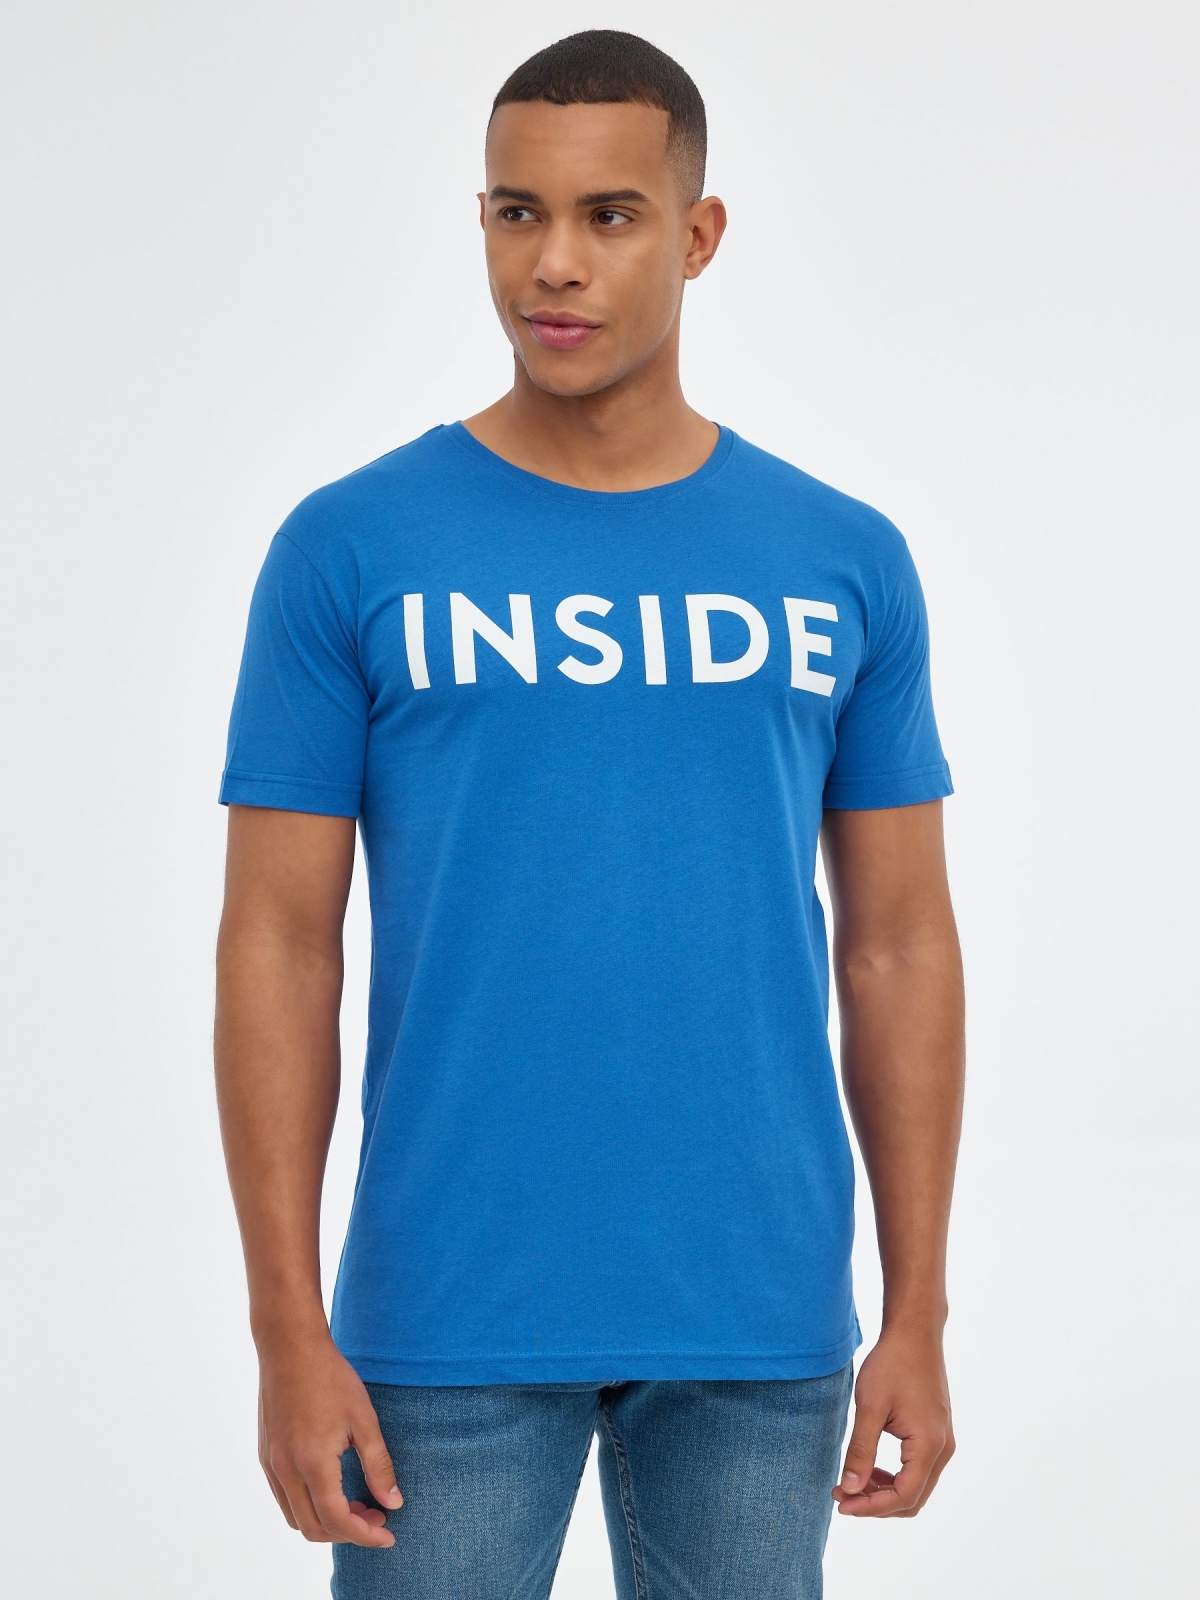 T-shirt básica "INSIDE azul ducados vista meia frontal